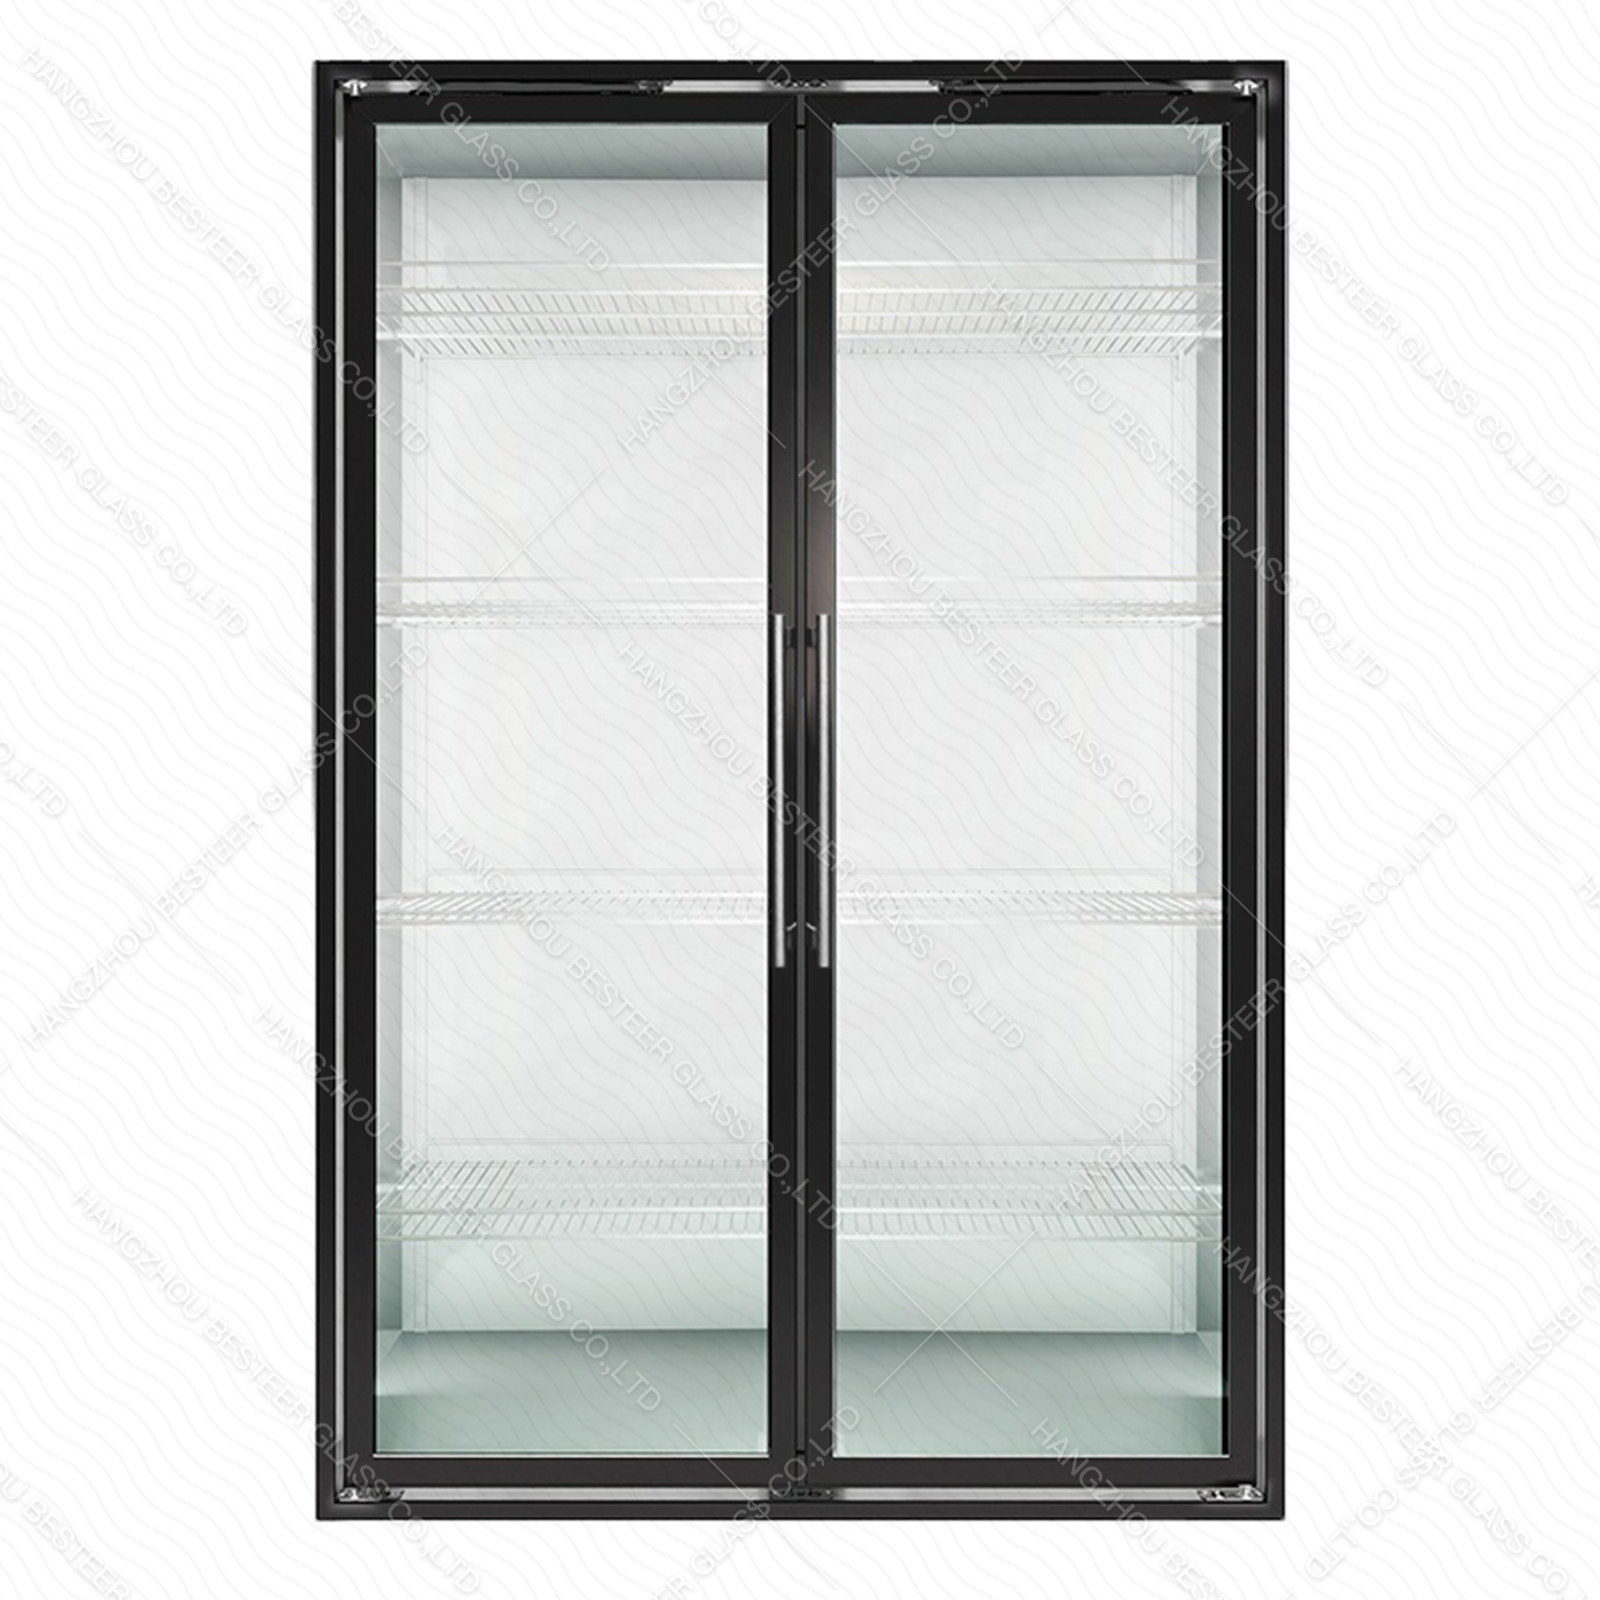 Media puerta batiente de vidrio extensible para congelador con luz LED